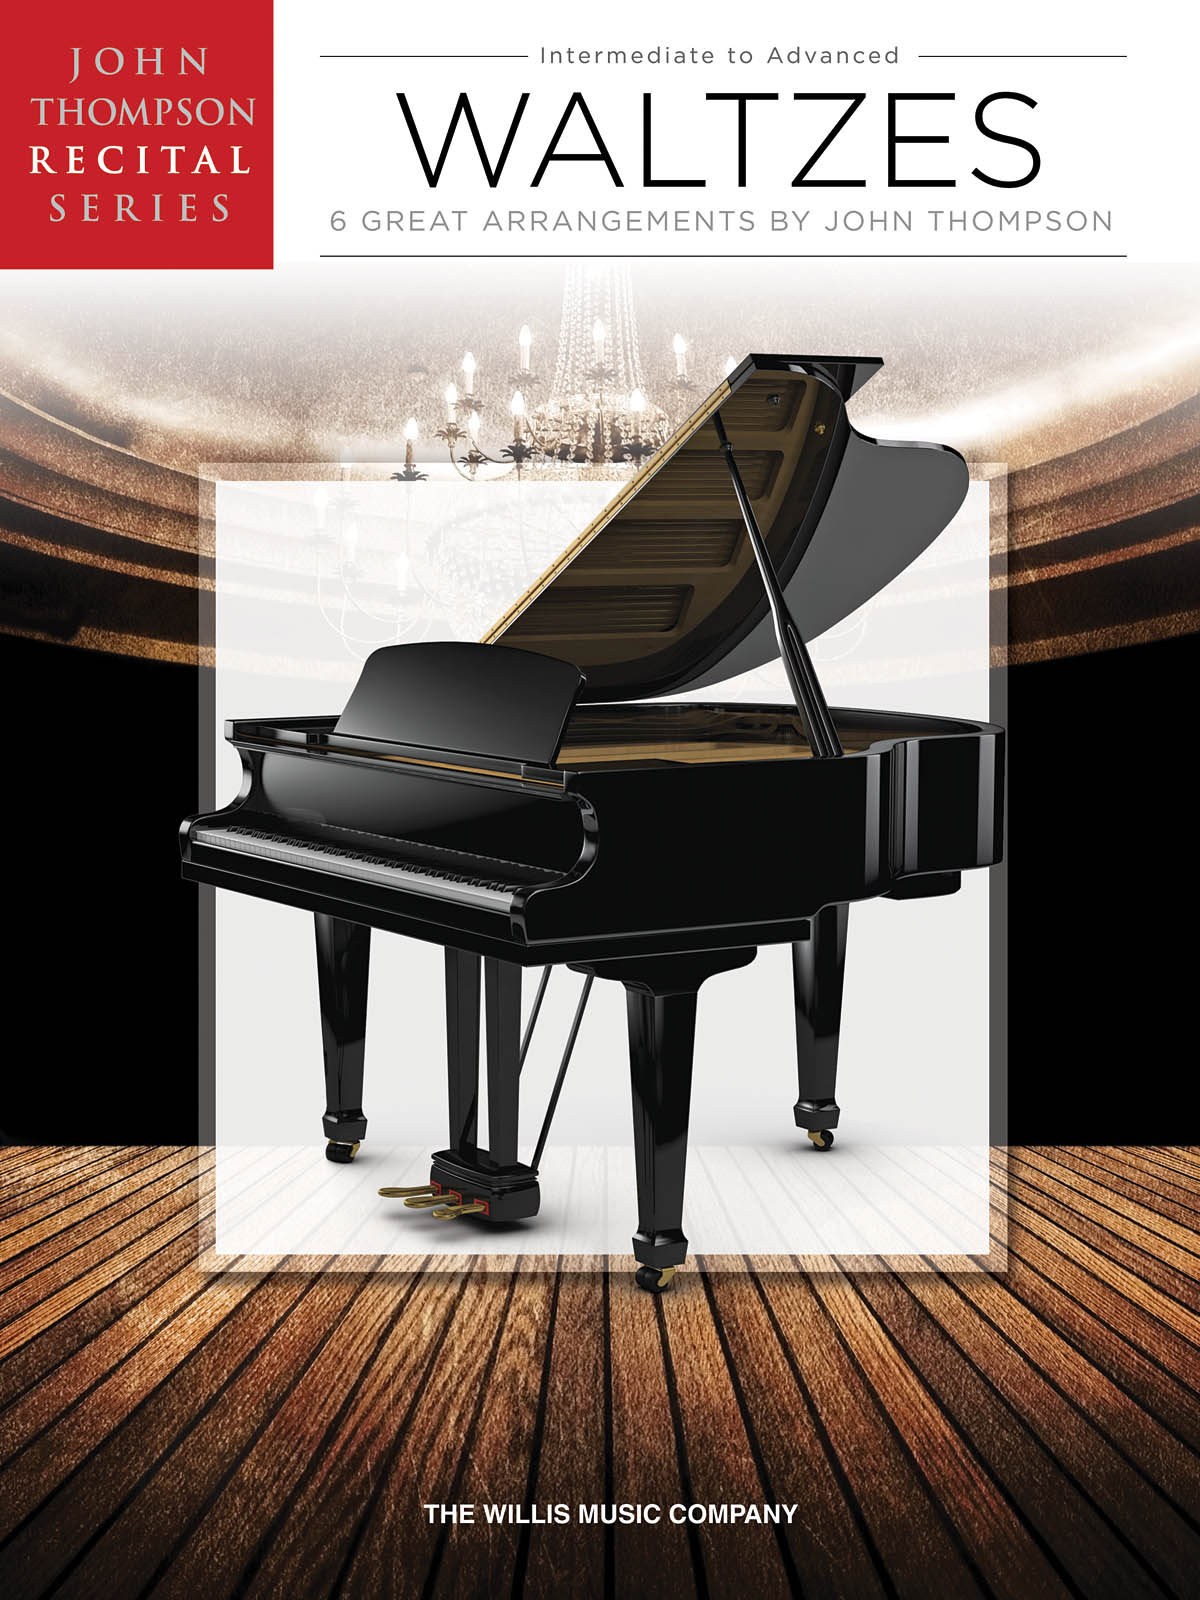 John Thompson Recital Series: Waltzes - Intermediate to Advanced - filmové melodie na klavír